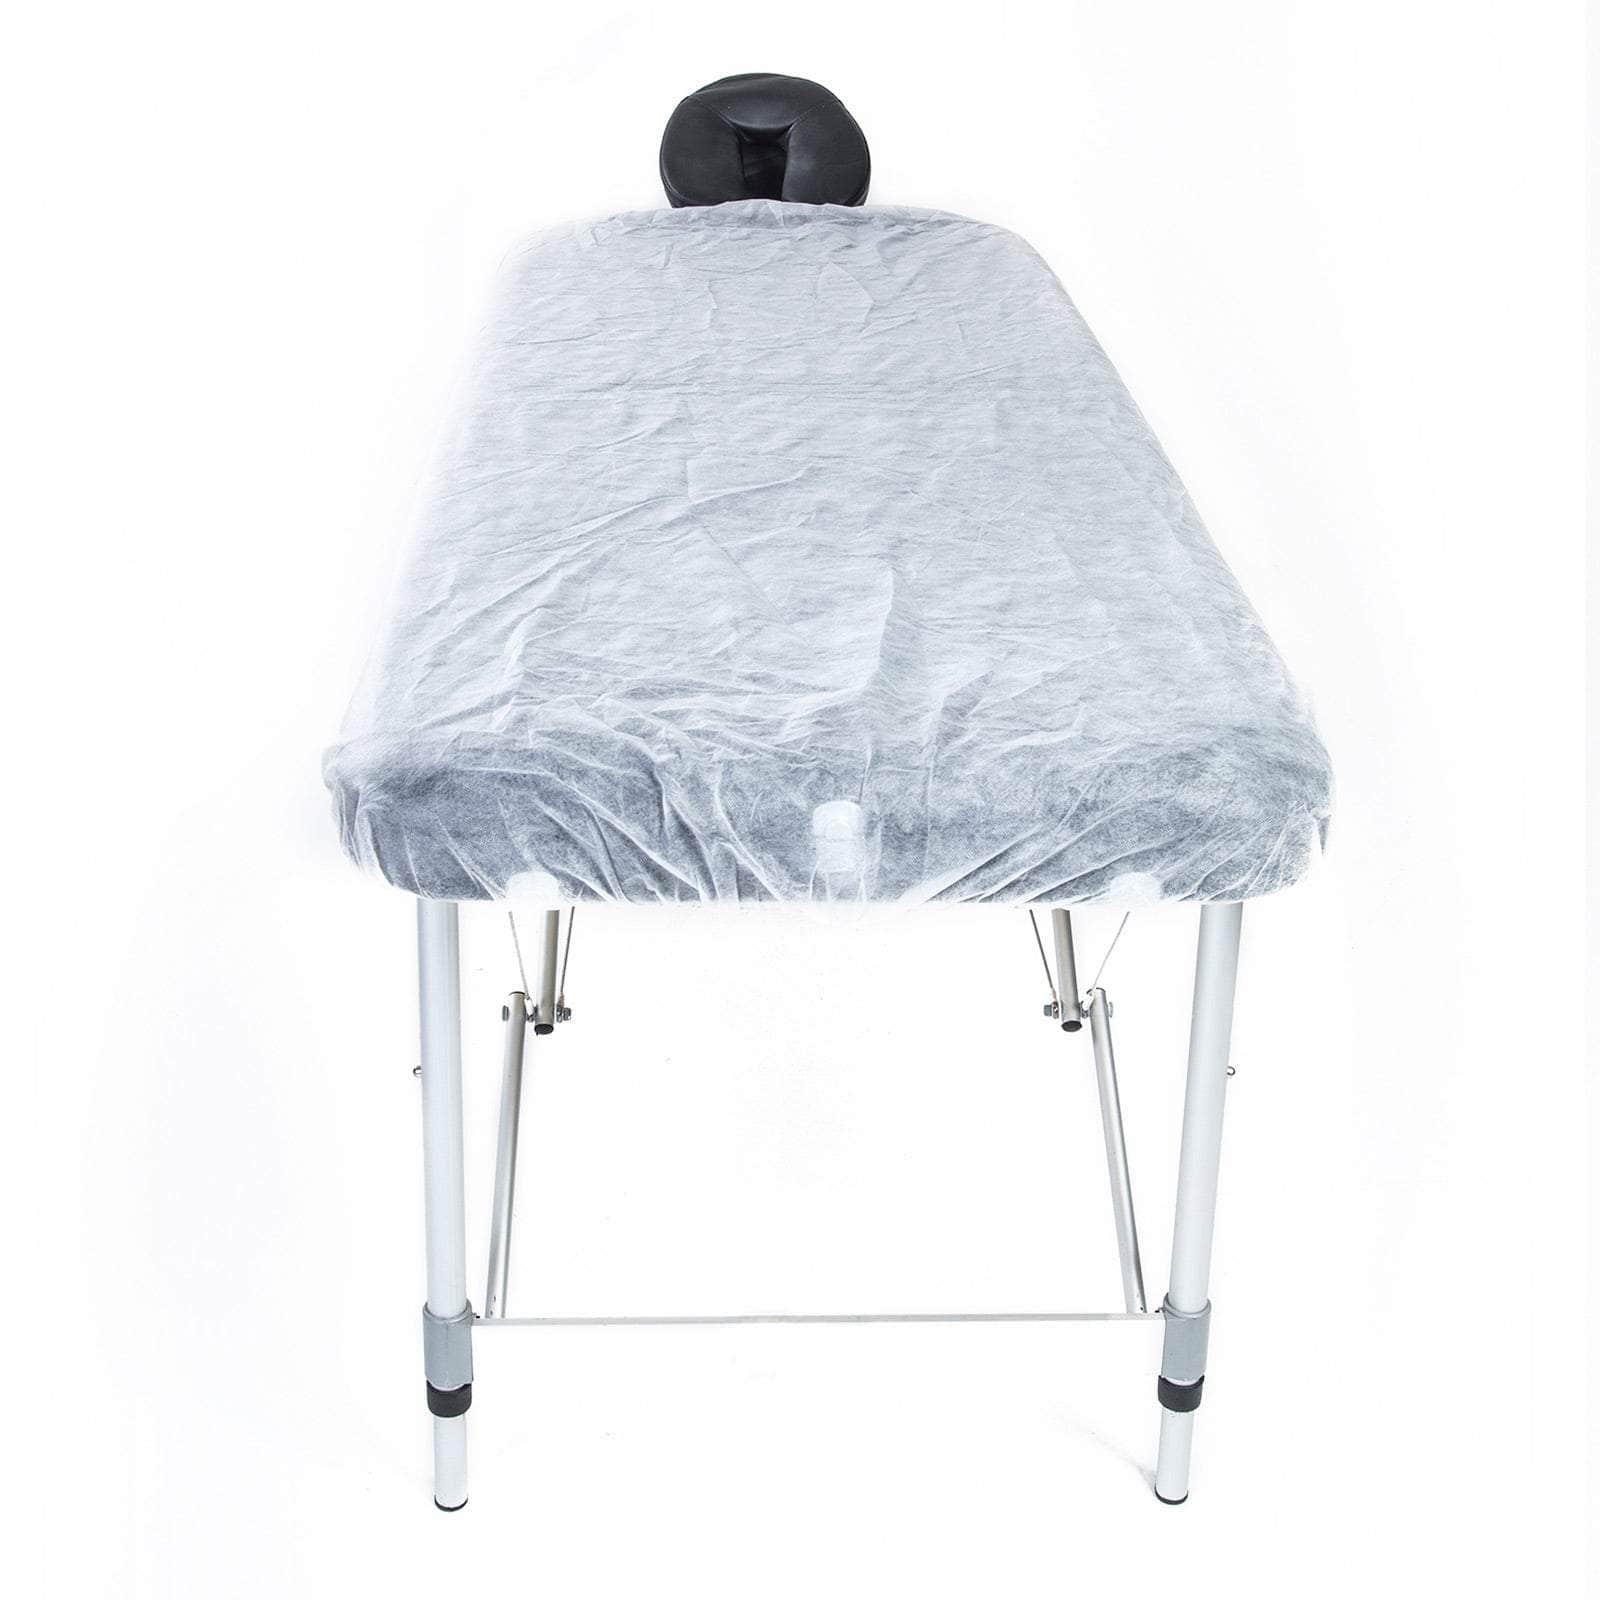 30Pcs Disposable Massage Table Sheet Cover 180Cm X 75Cm